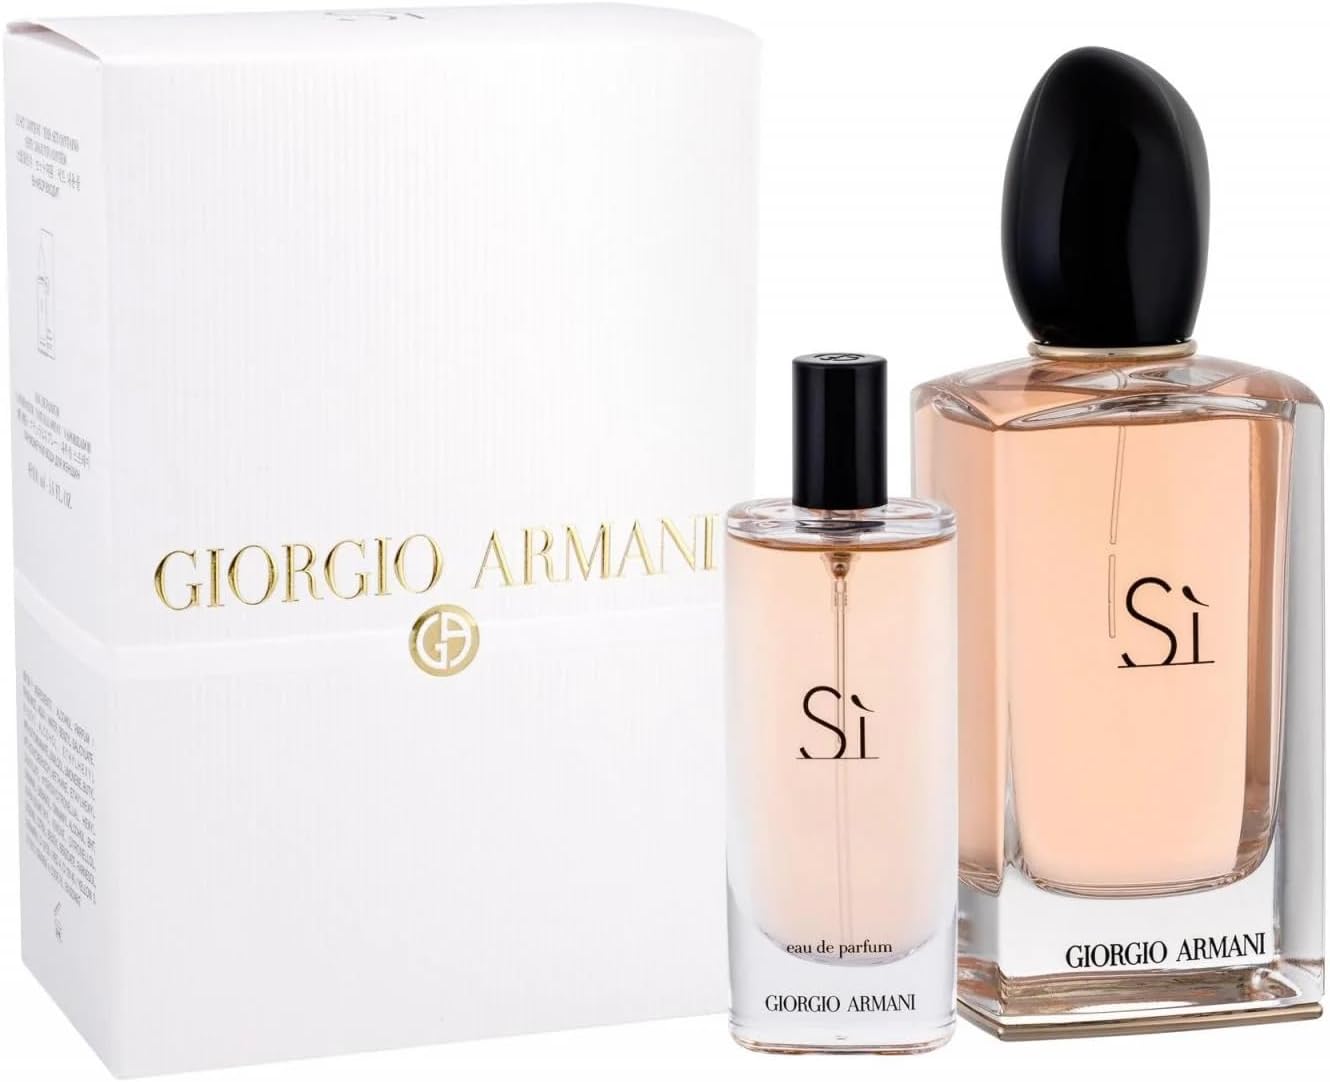 Giorgio Armani Sì Eau de Parfum : des notes fruitées, florales et boisées, créant une fragrance riche et complexe